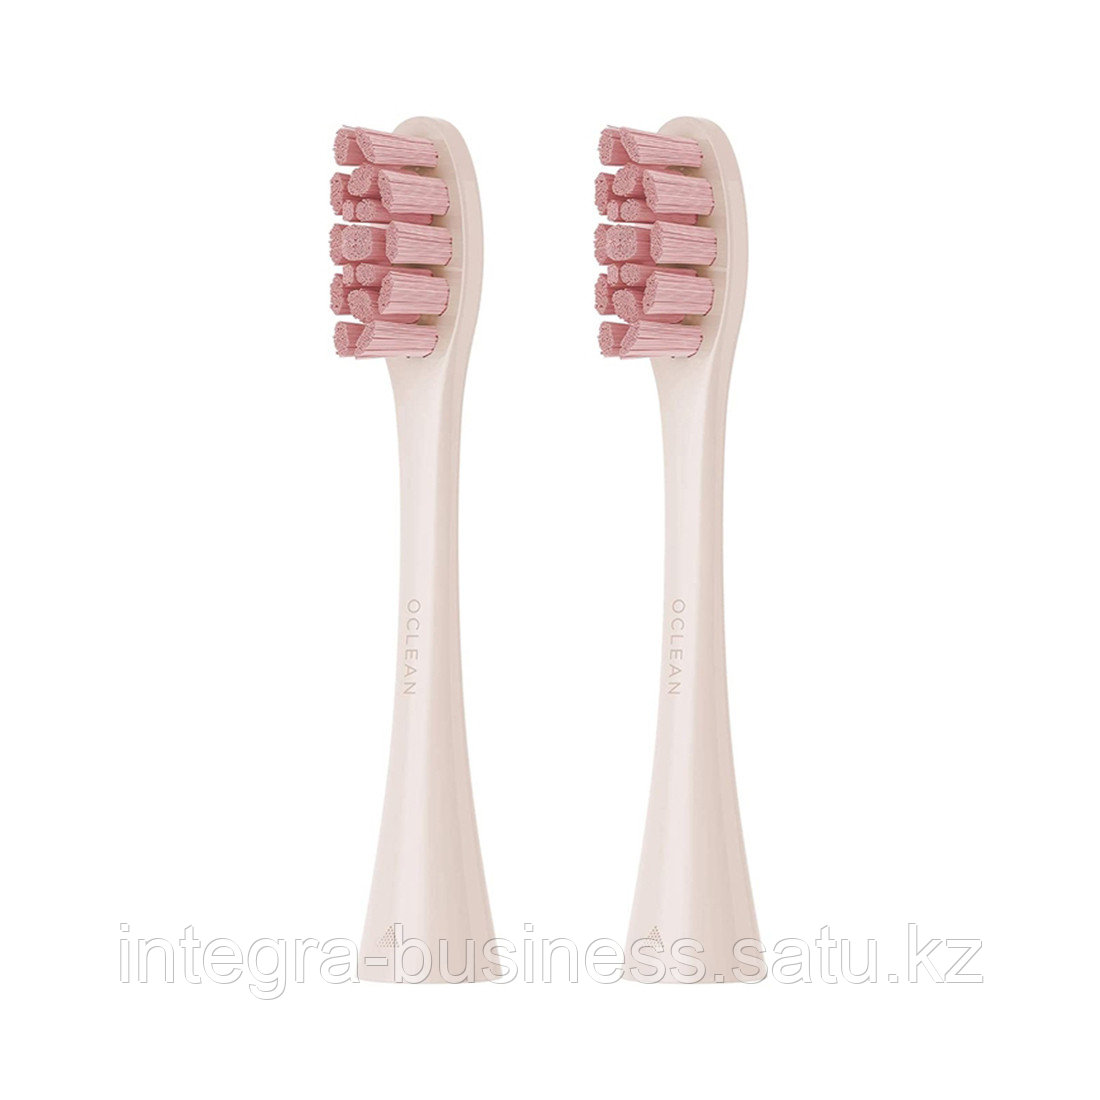 Сменные зубные щетки PW03 Pink для Oclean Z1 и Oclean X Pro